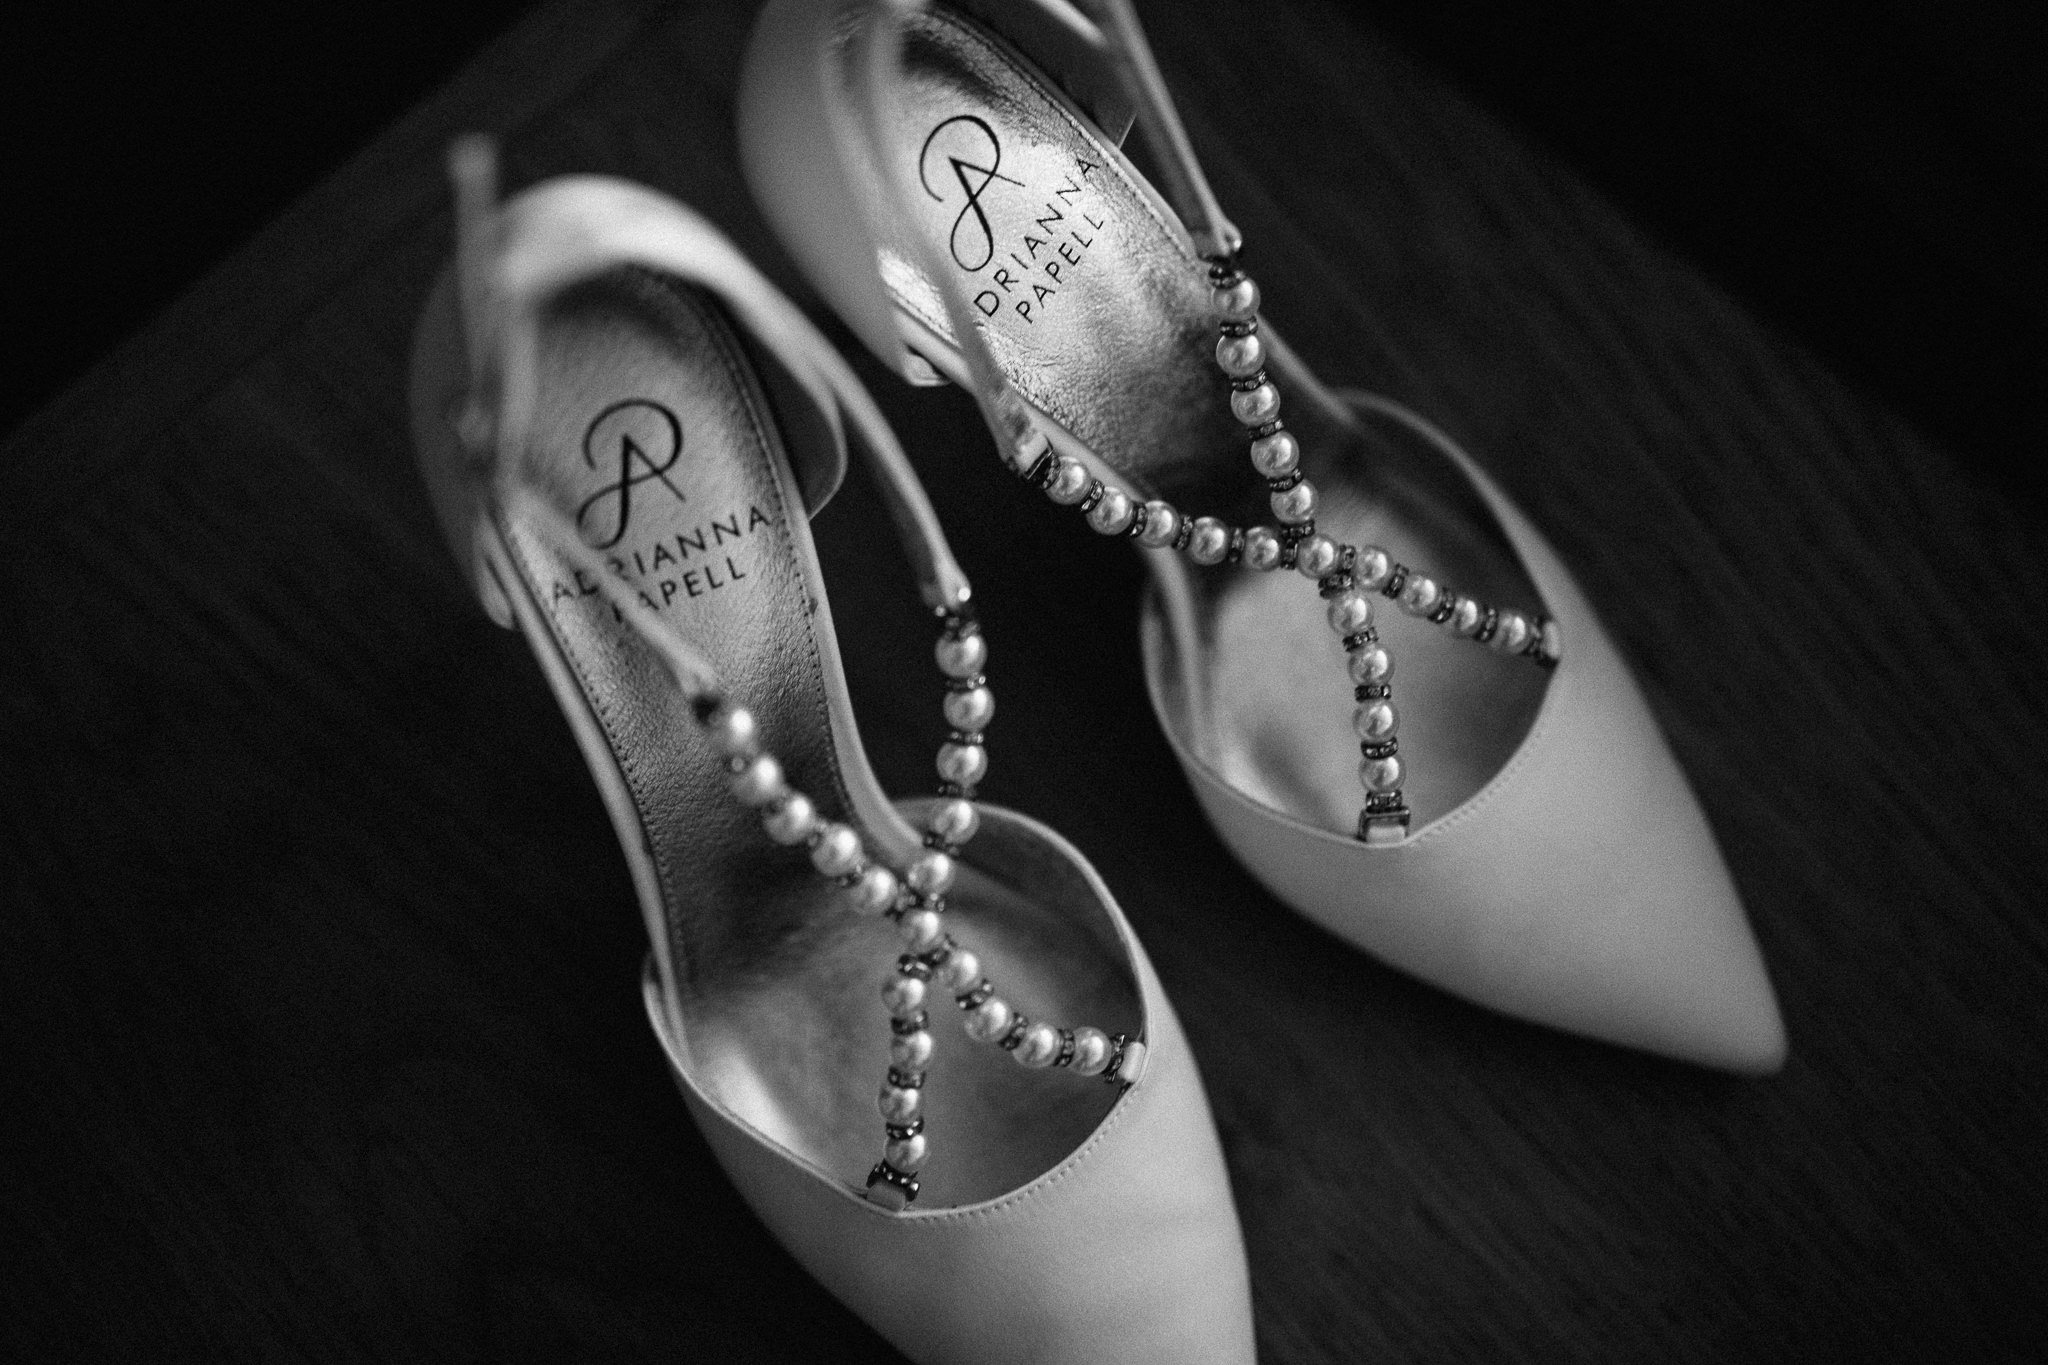  Bride’s shoes 